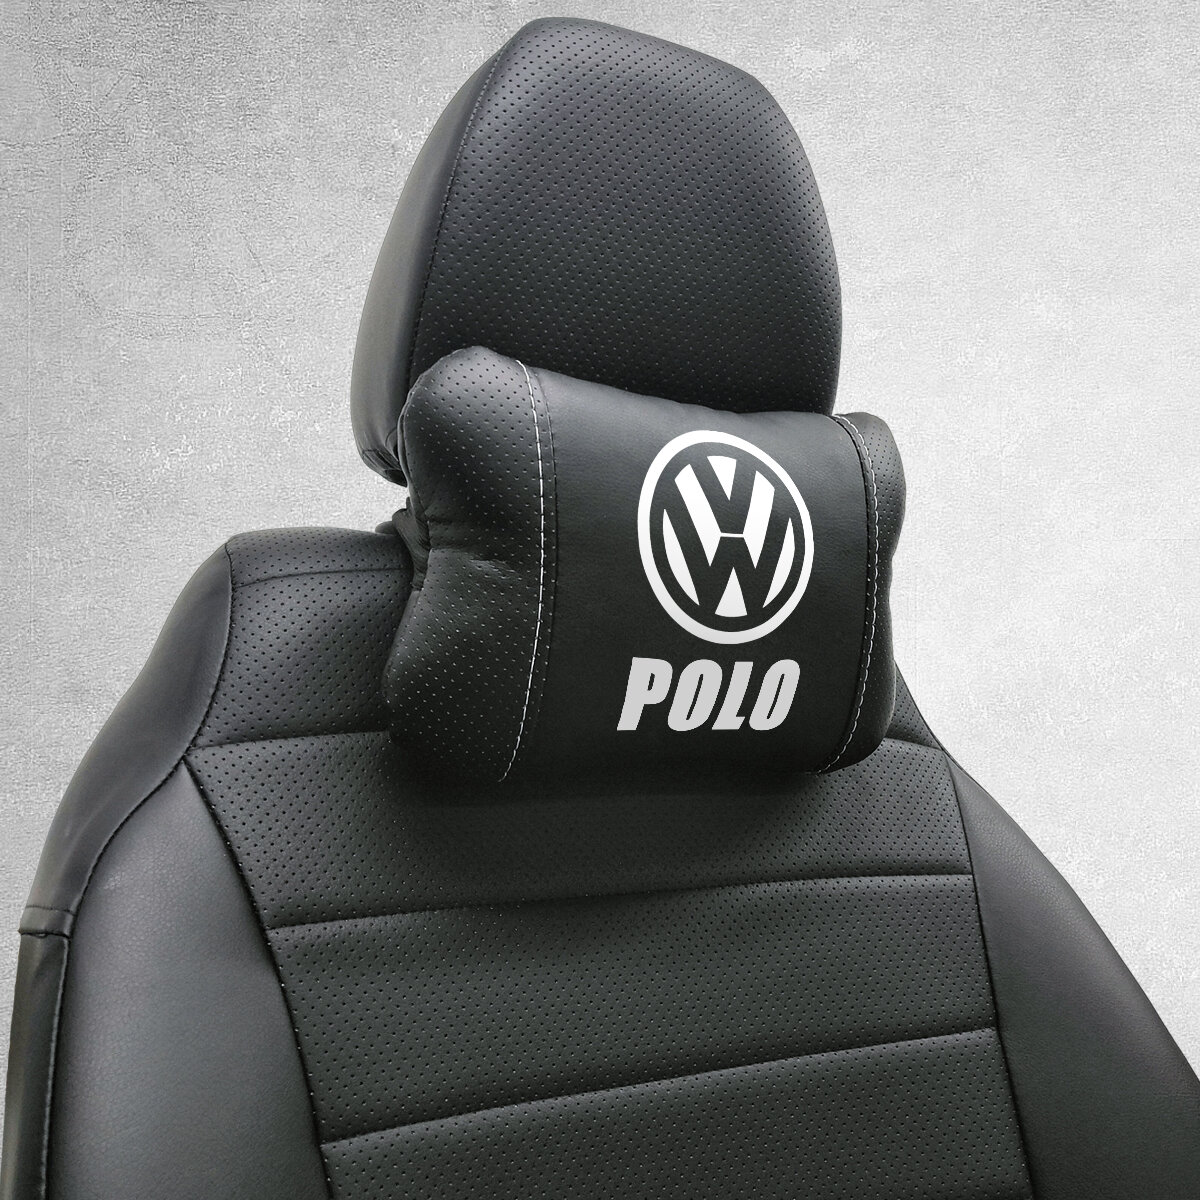 Автомобильная подушка под шею на подголовник эмблема Volkswagen Polo, для Фольксваген Поло. Подушка для шеи в машину. Подушка на сиденье автомобиля.